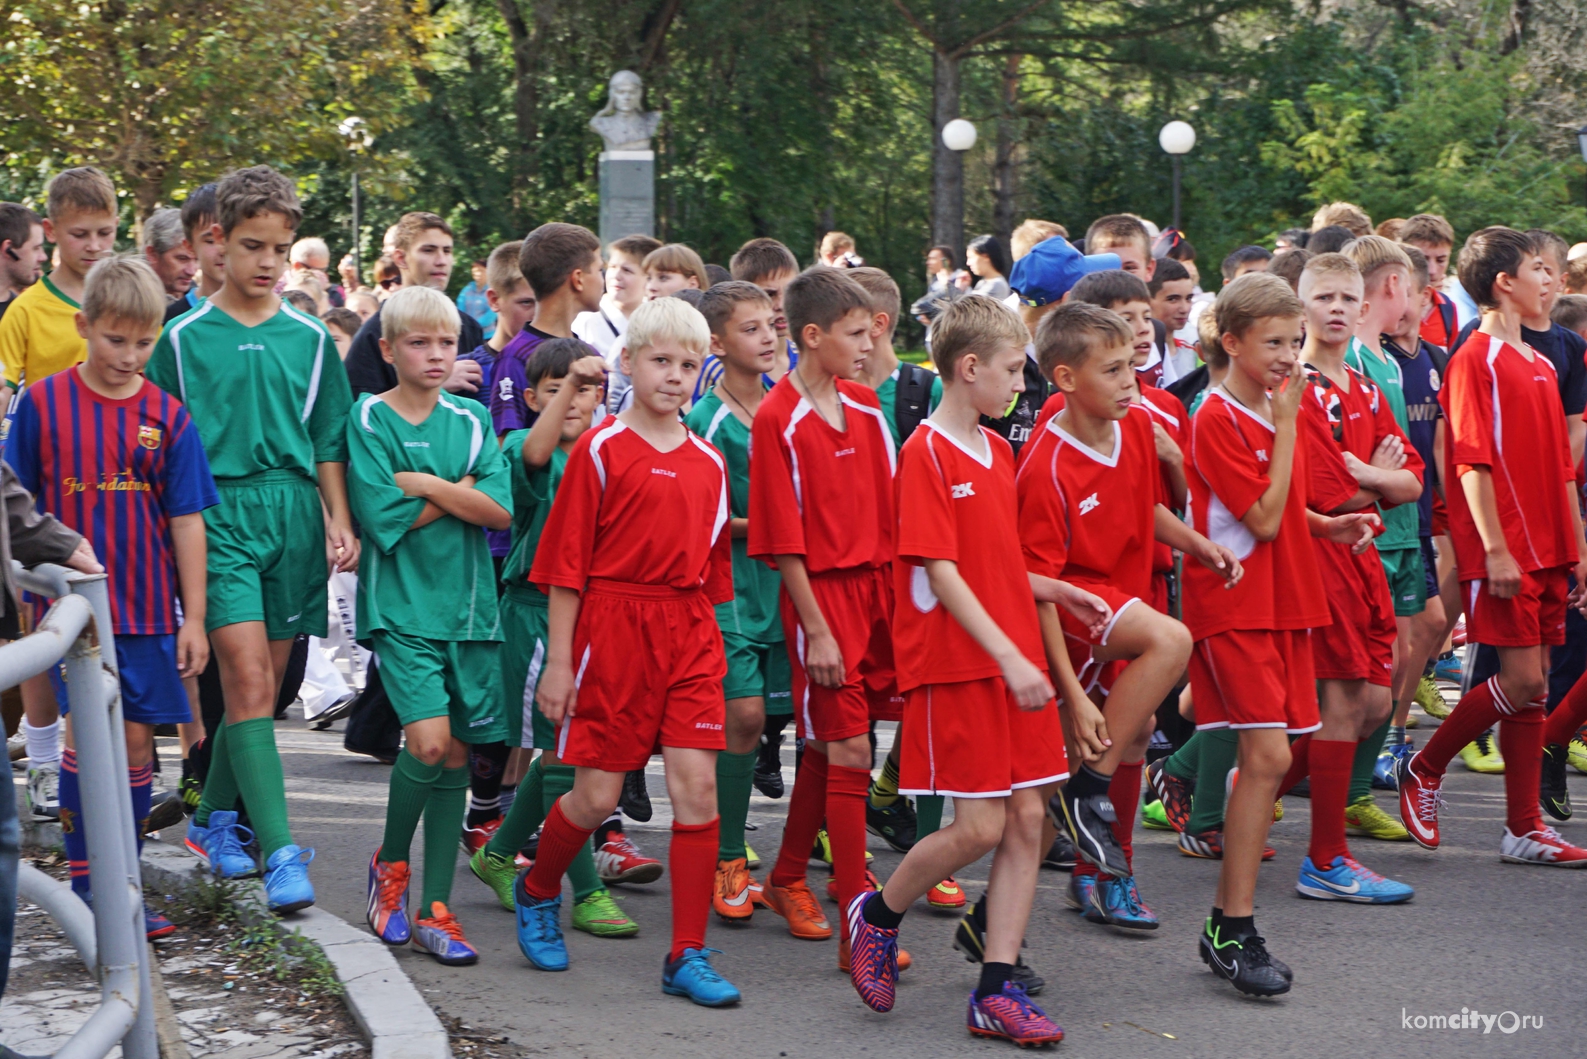 Комсомольчане «вышли на старт» в рамках спортивного праздника и шествия по проспекту Мира